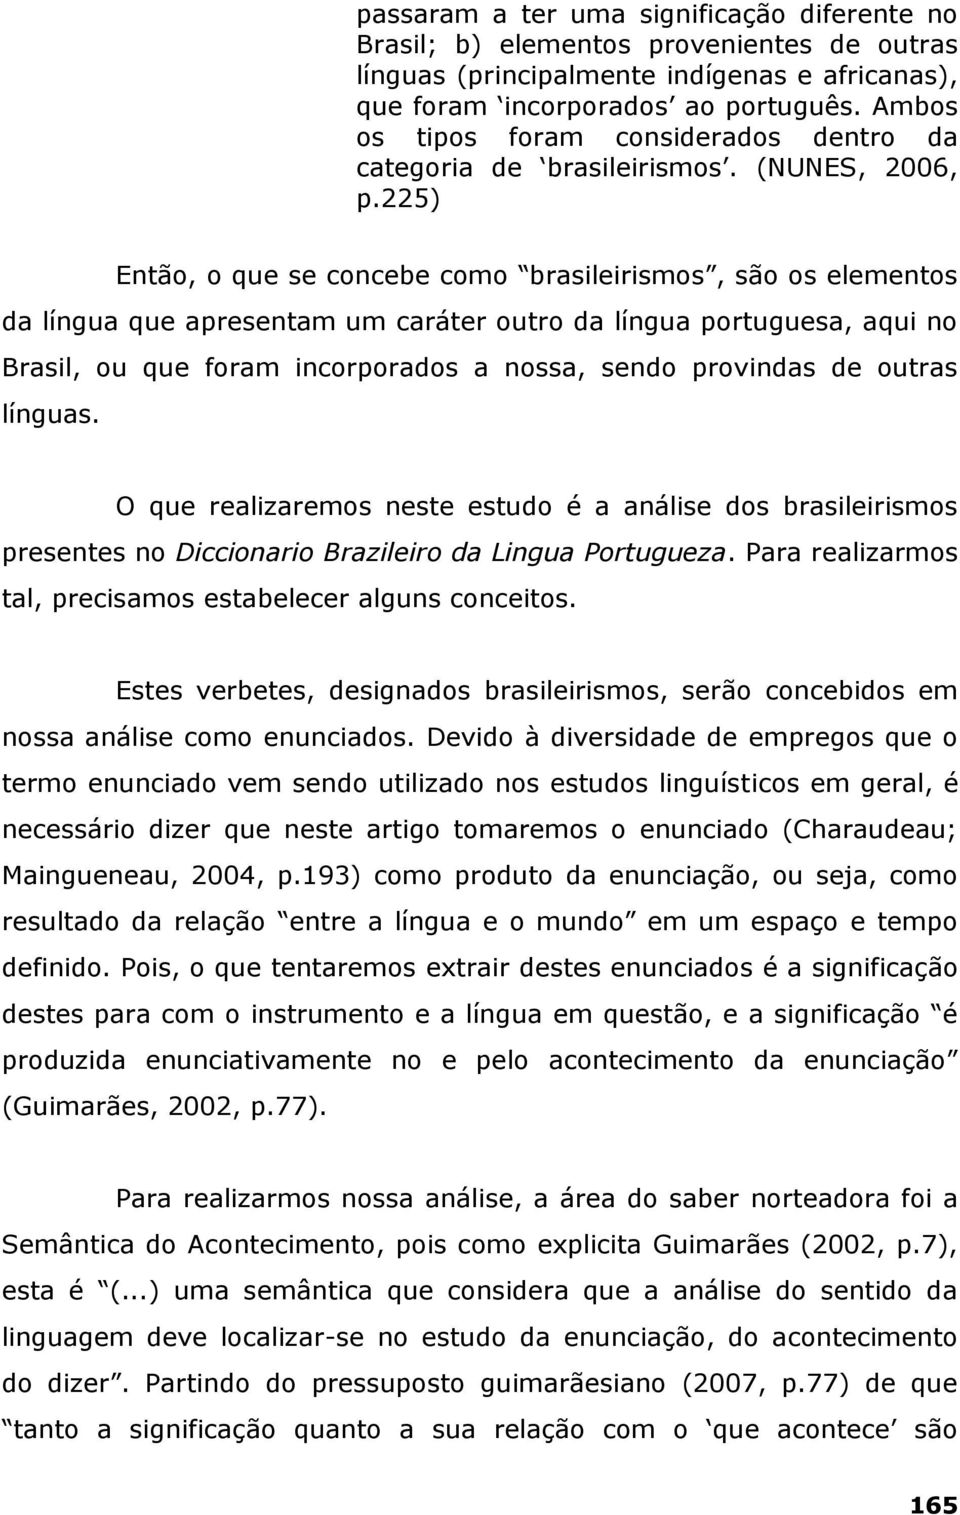 225) Então, o que se concebe como brasileirismos, são os elementos da língua que apresentam um caráter outro da língua portuguesa, aqui no Brasil, ou que foram incorporados a nossa, sendo provindas